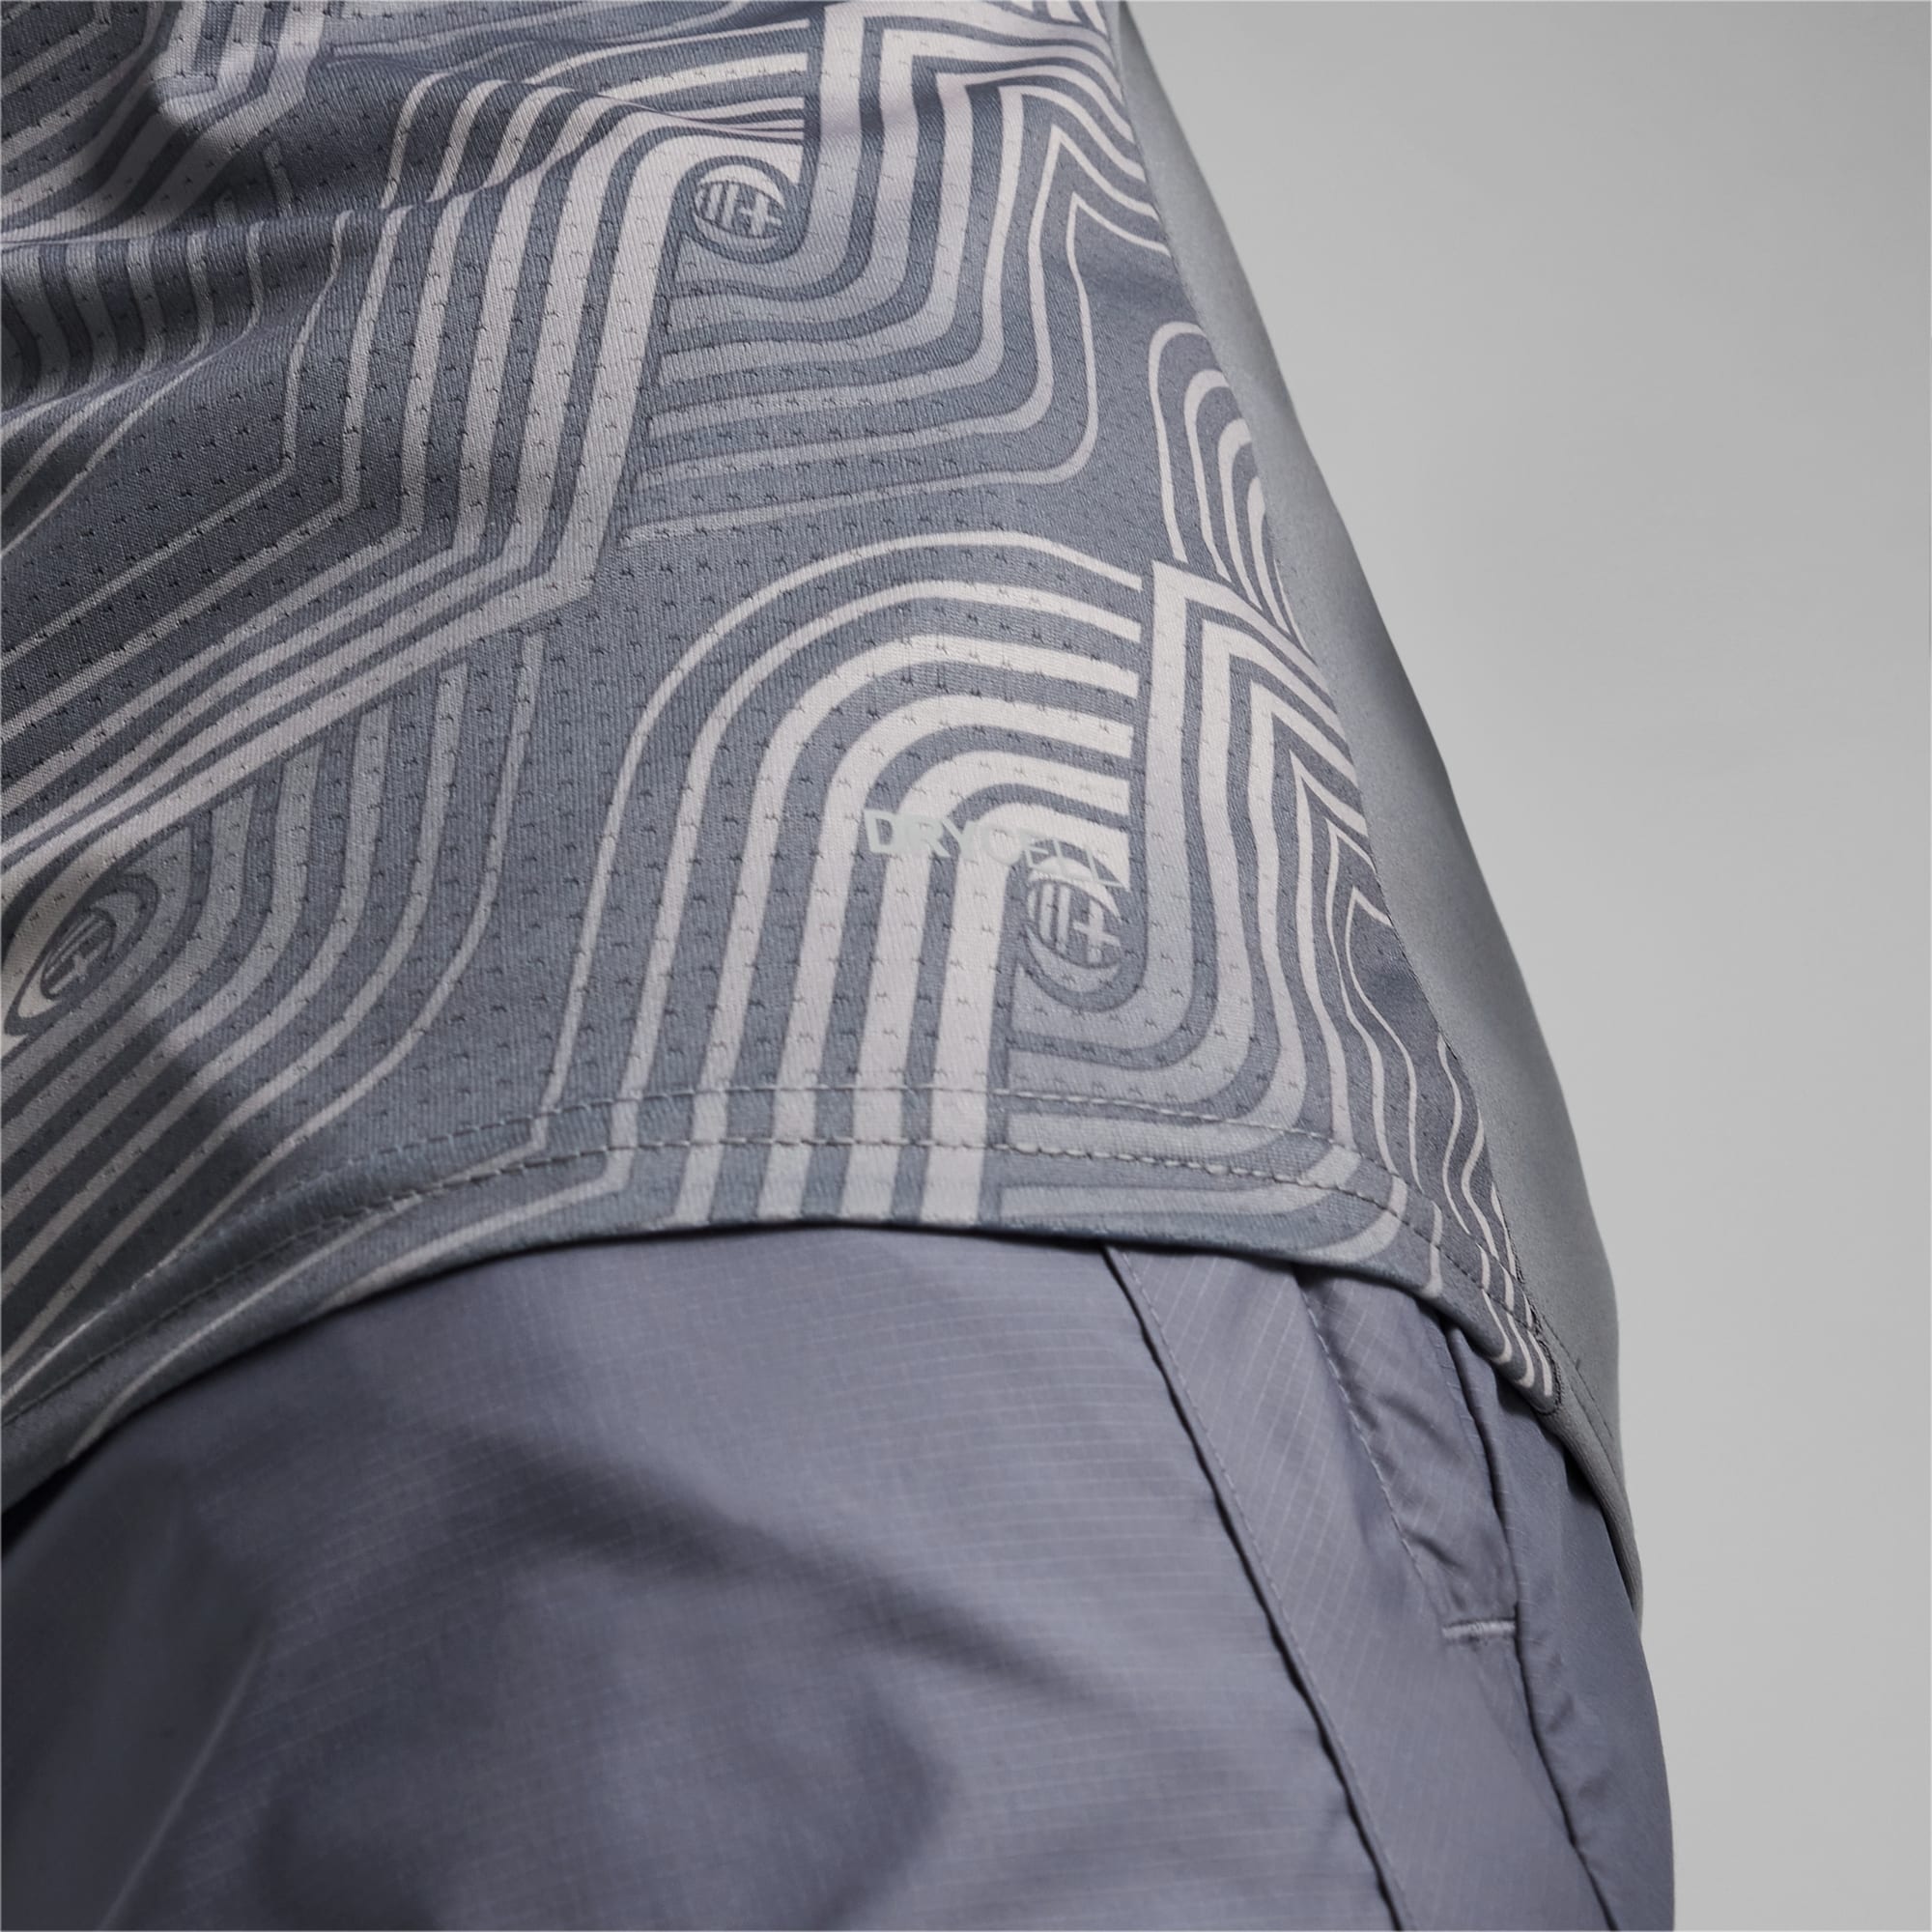 Men's PUMA AC Milan Pre-Match Football Jersey, Grey Tile/Ravish, Size M, Clothing